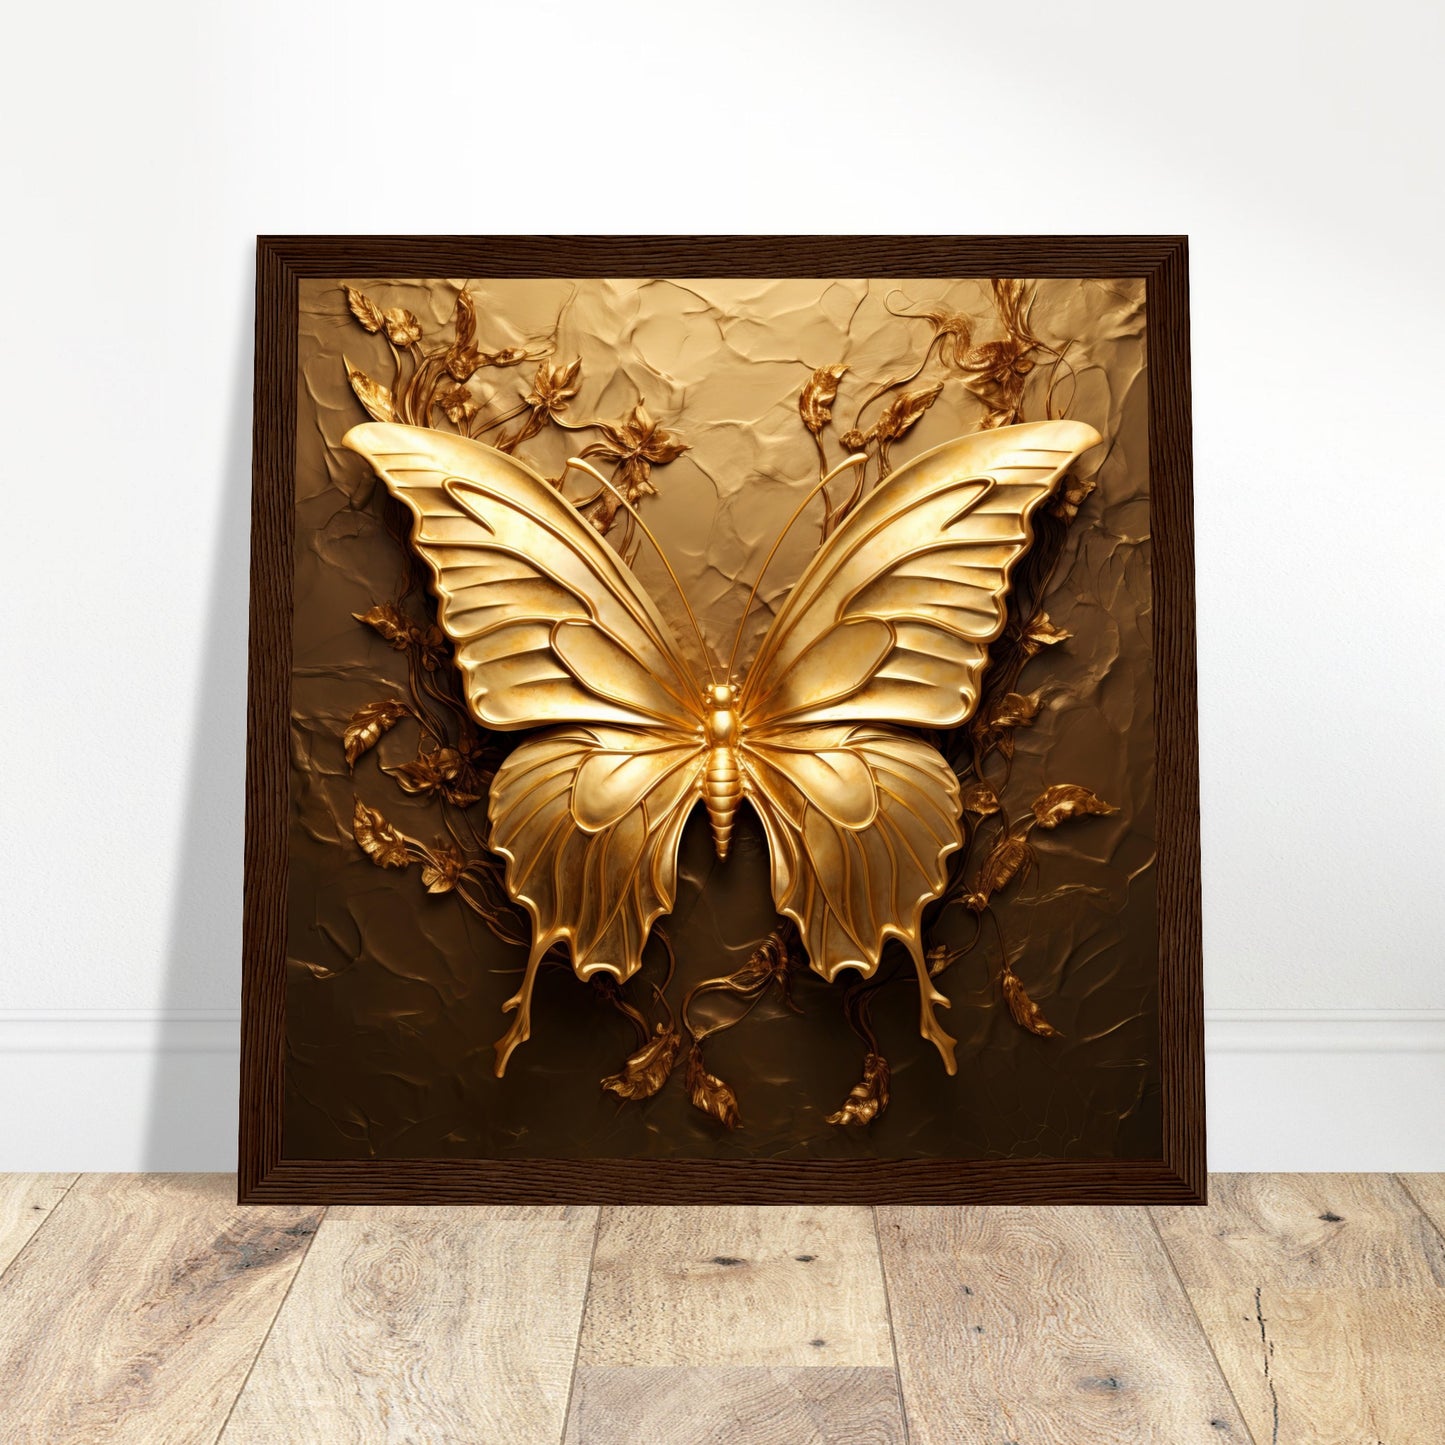 Gold Butterfly Artwork - Print Room Ltd White frame 30x30 cm / 12x12"